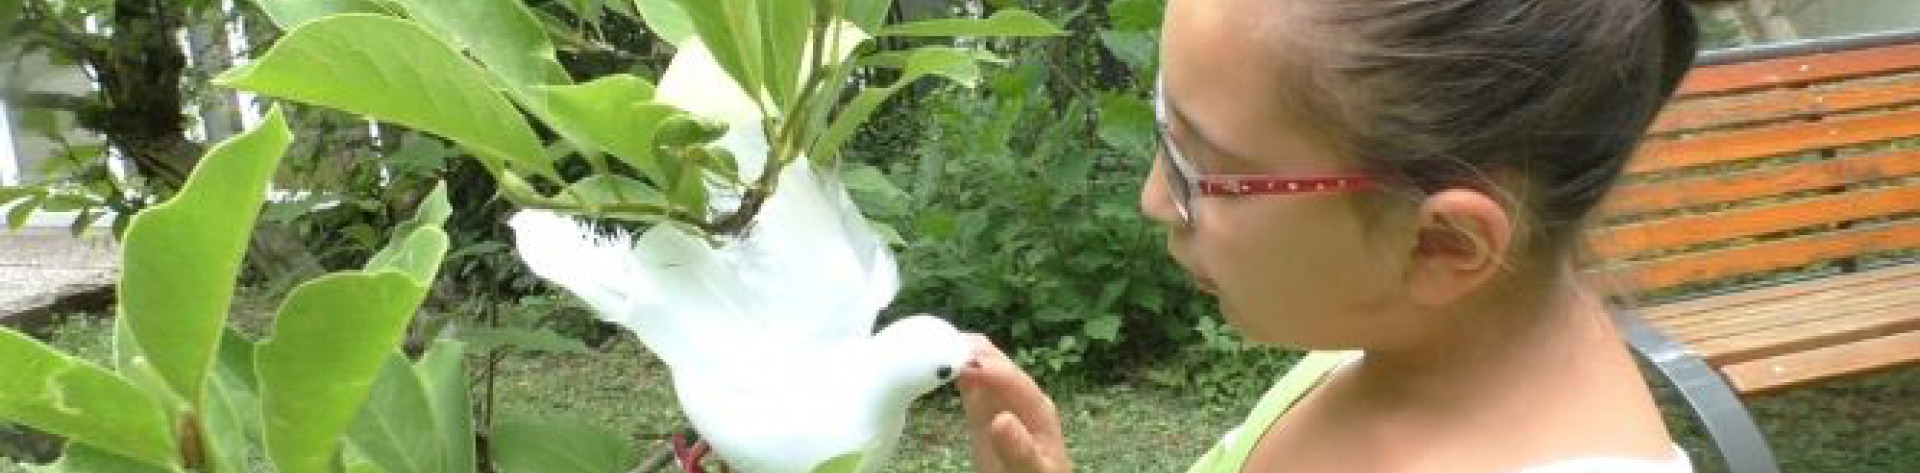 Mädchen berührt weiße Taube, die auf Busch sitzt